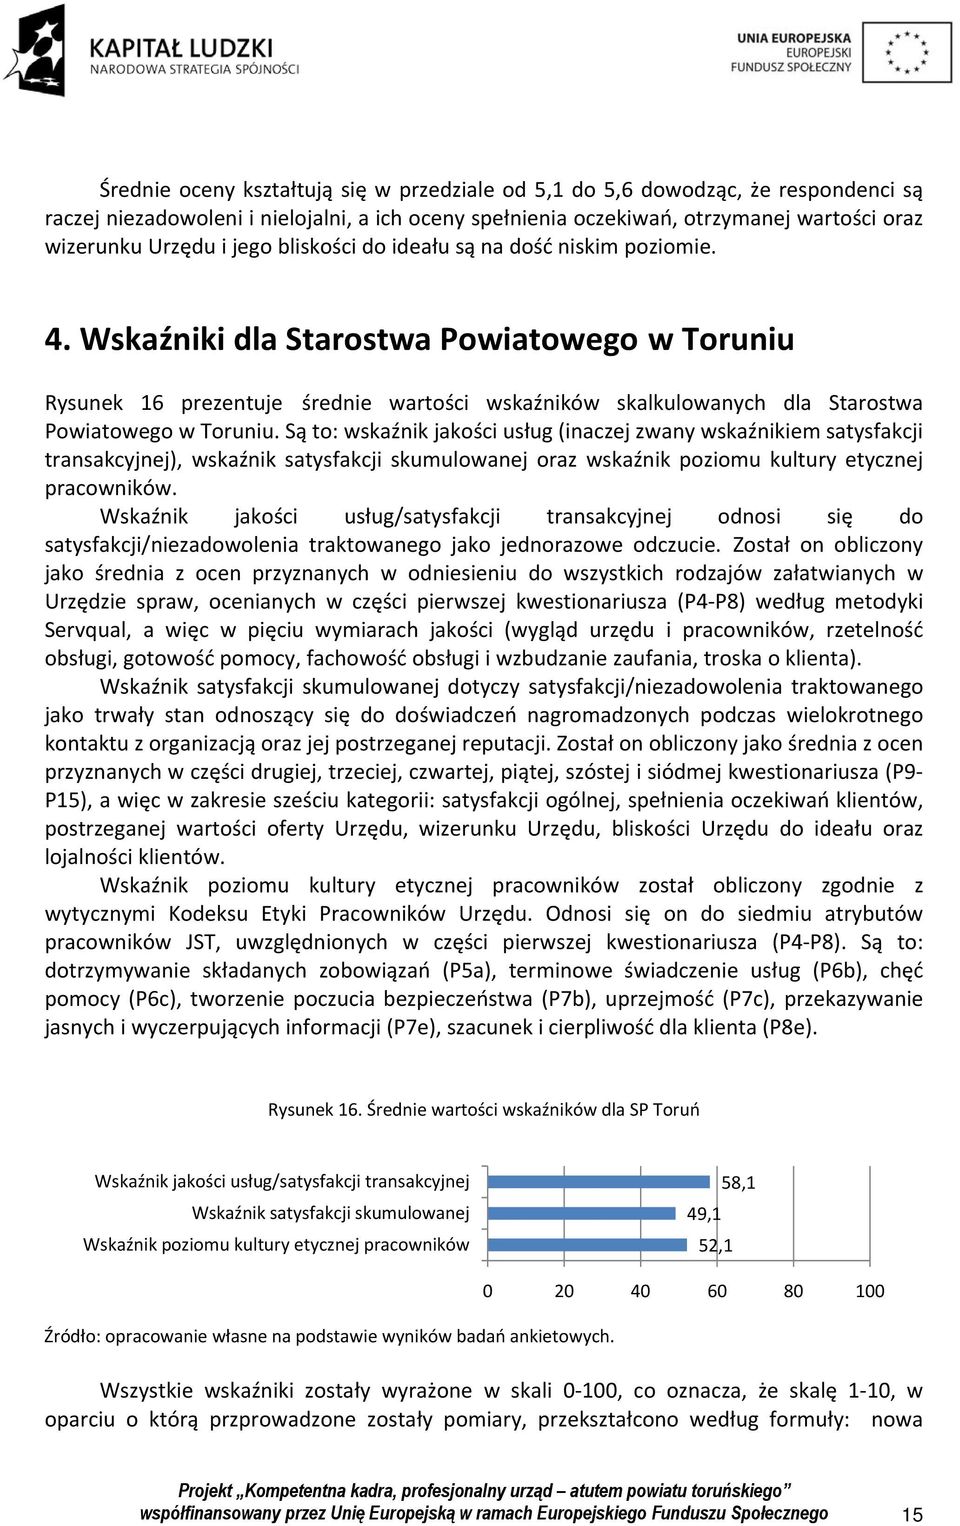 Wskaźniki dla Starostwa Powiatowego w Toruniu Rysunek 16 prezentuje średnie wartości wskaźników skalkulowanych dla Starostwa Powiatowego w Toruniu.